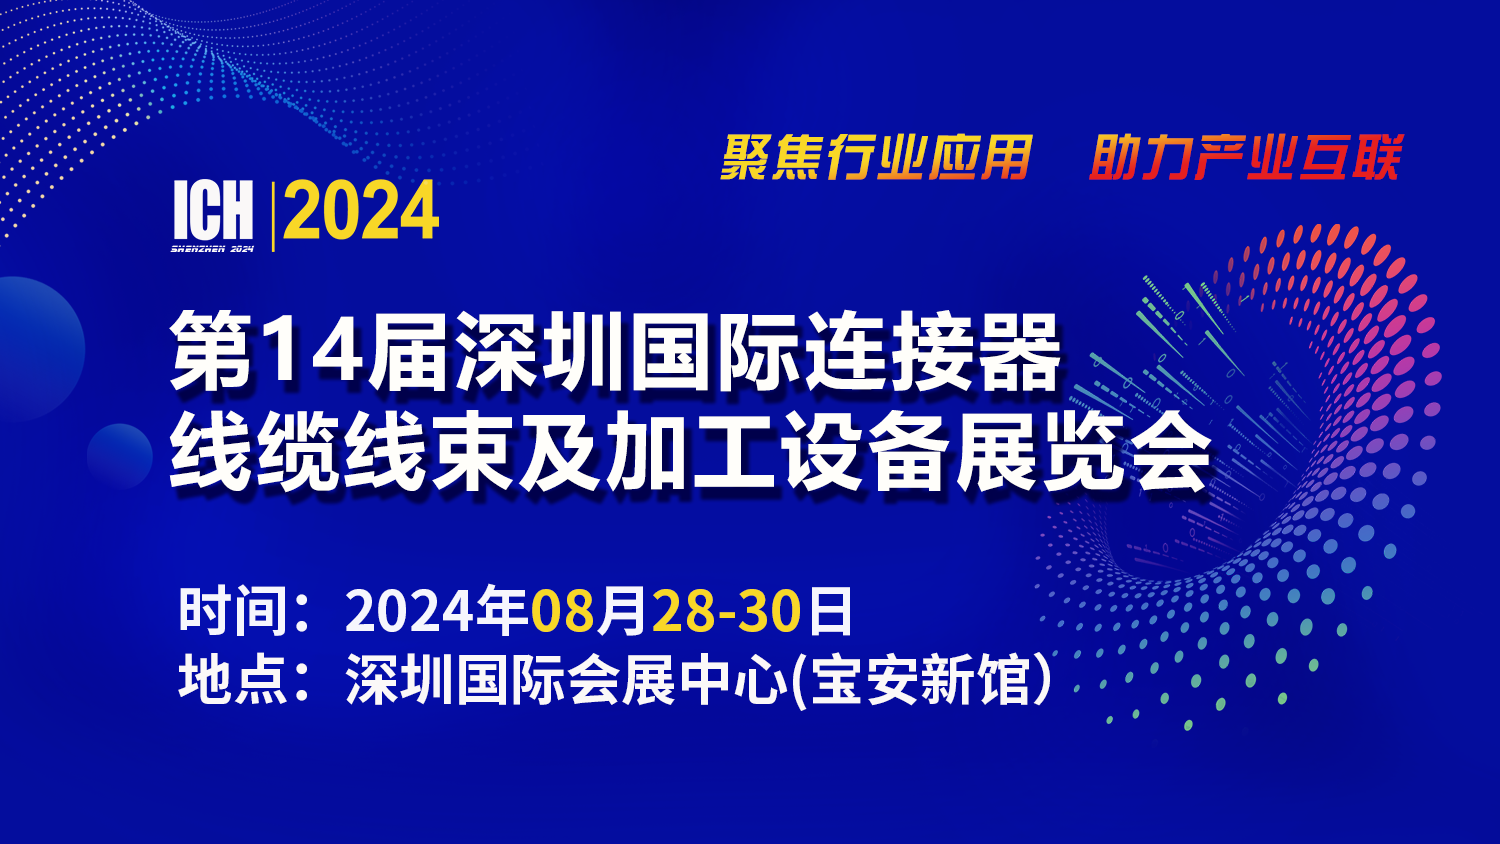 巴斯巴科技将参加 ICH2024深圳连接器线束加工展会